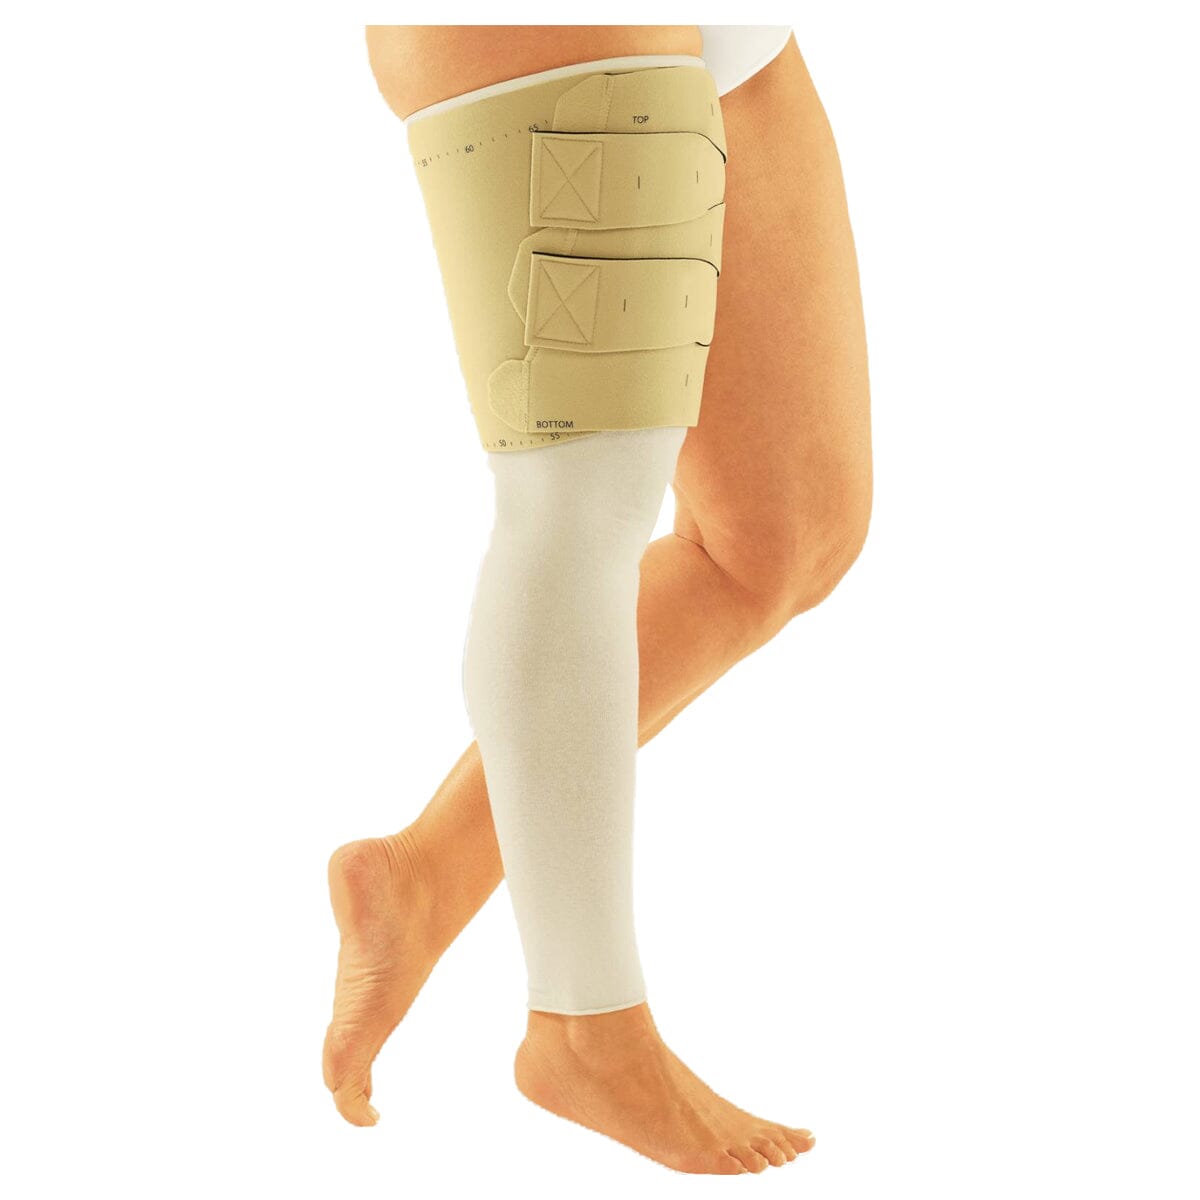 Image of Medi Reduction Kit, Upper Leg, Wide, Long, 40cm